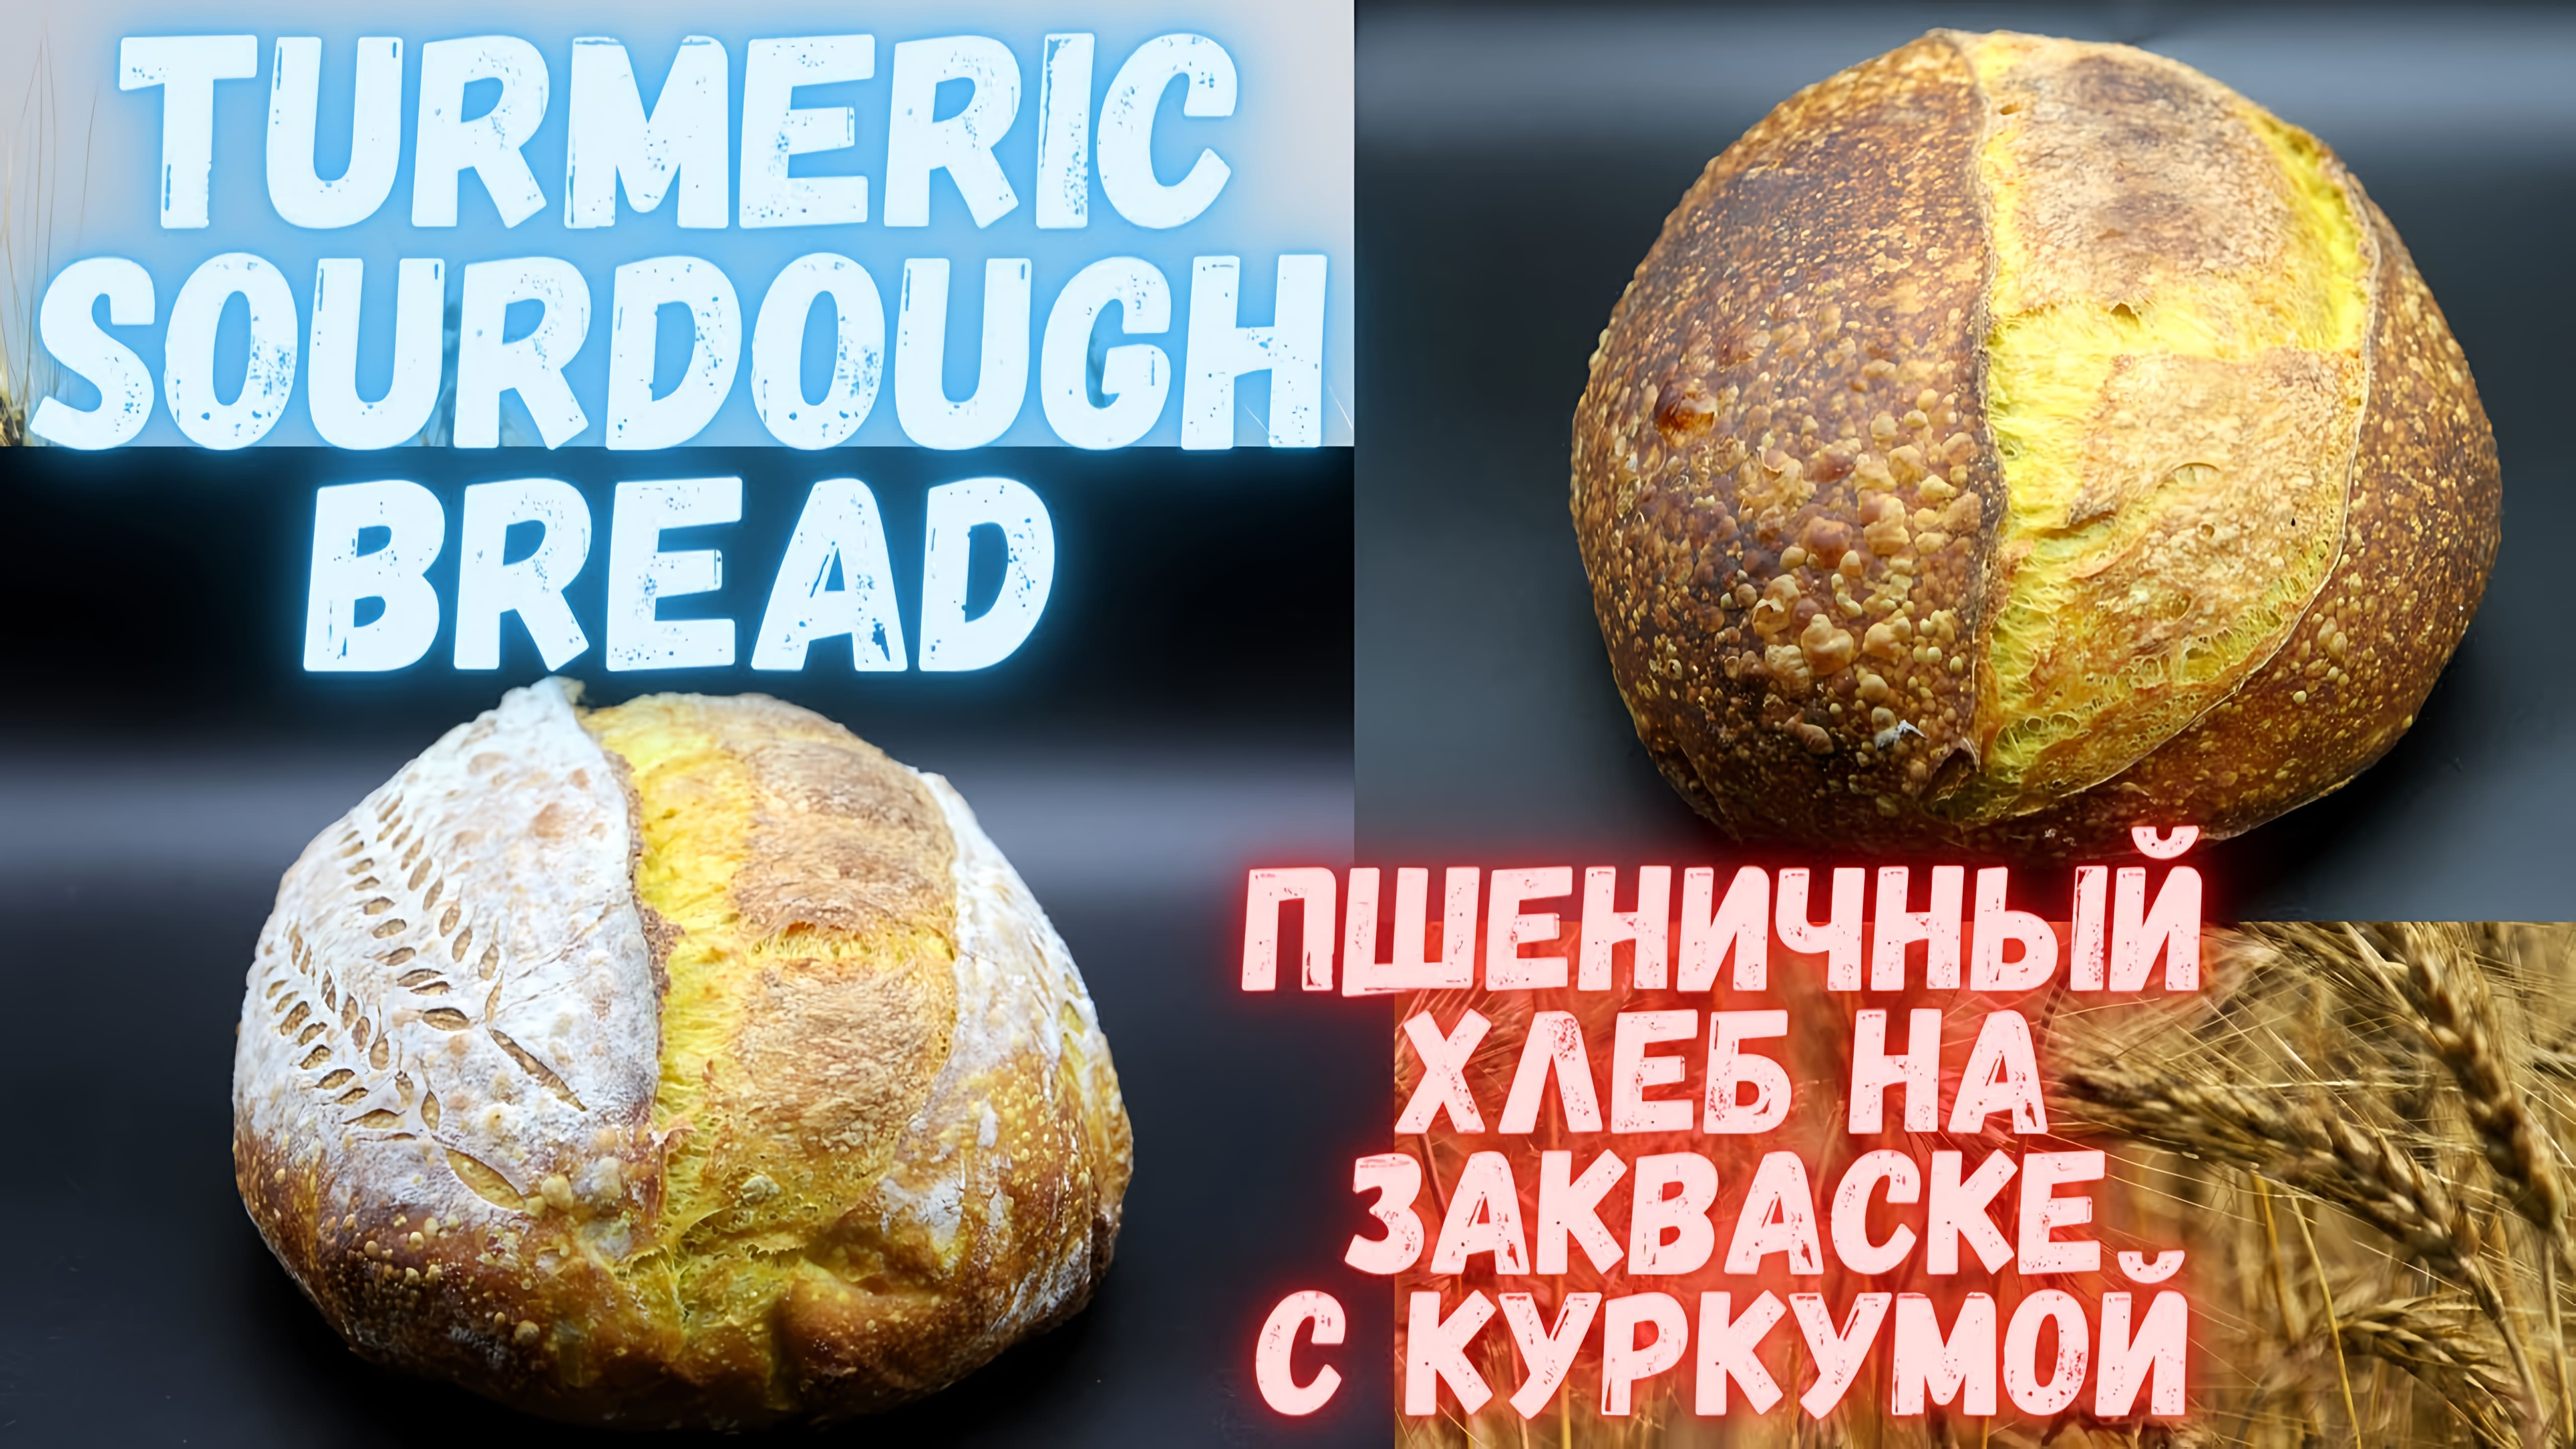 Видео: Turmeric Sourdough Bread| Пшеничный хлеб на закваске с куркумой | Не хлеб,а золото! Очень вкусный!